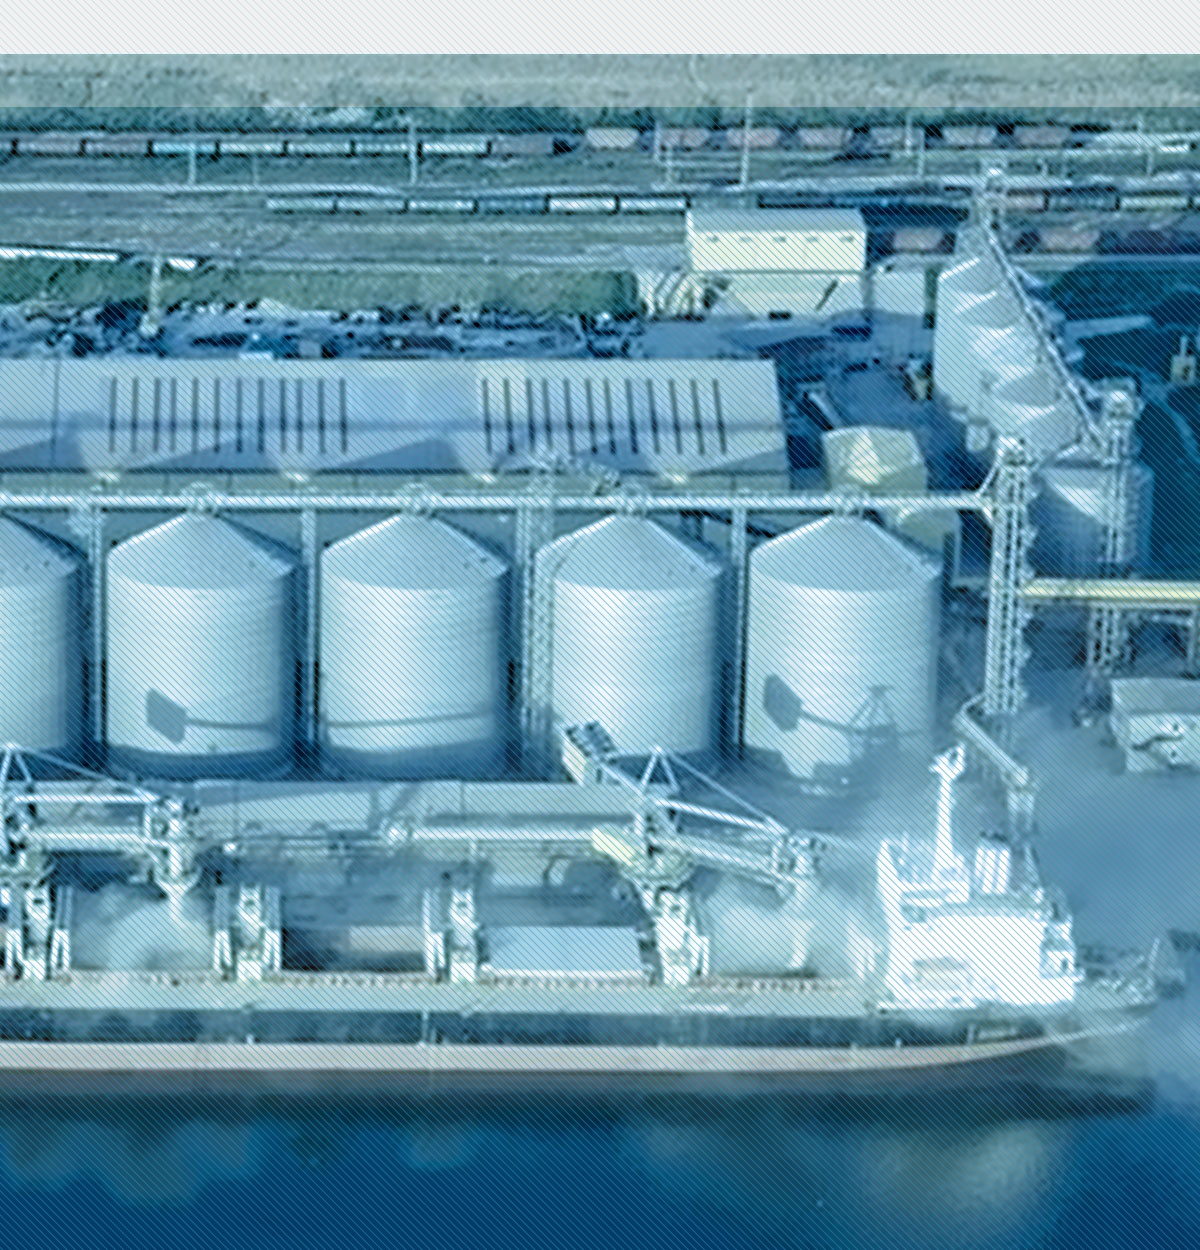 Terminales y Puertos Graneleros - Sirabonian - Soluciones de Ingeniería para grandes proyectos